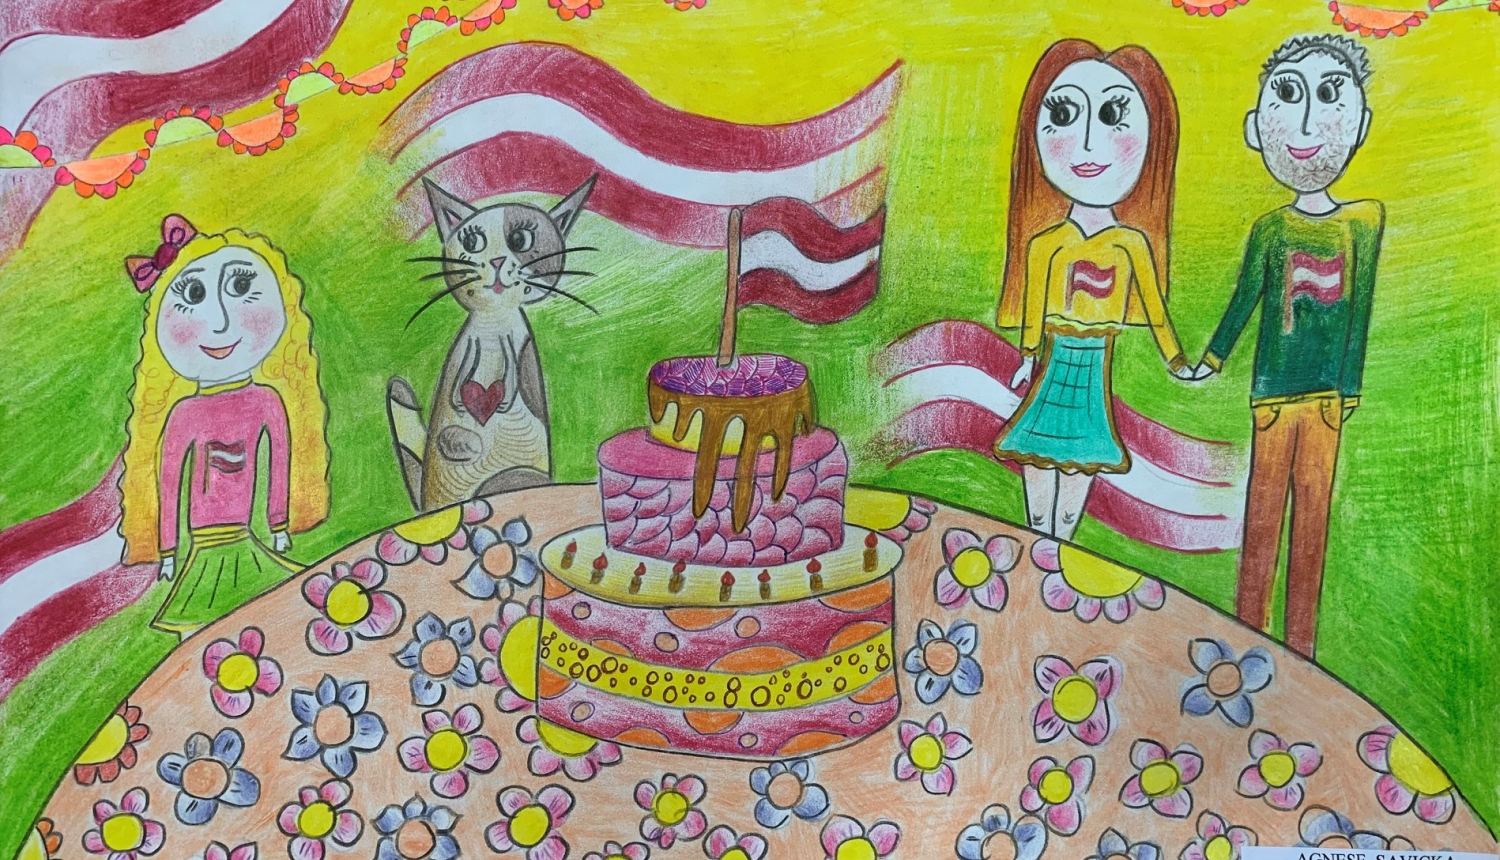 Skolēni aicināti piedalīties zīmējumu konkursā “Latvija manā sirdī”